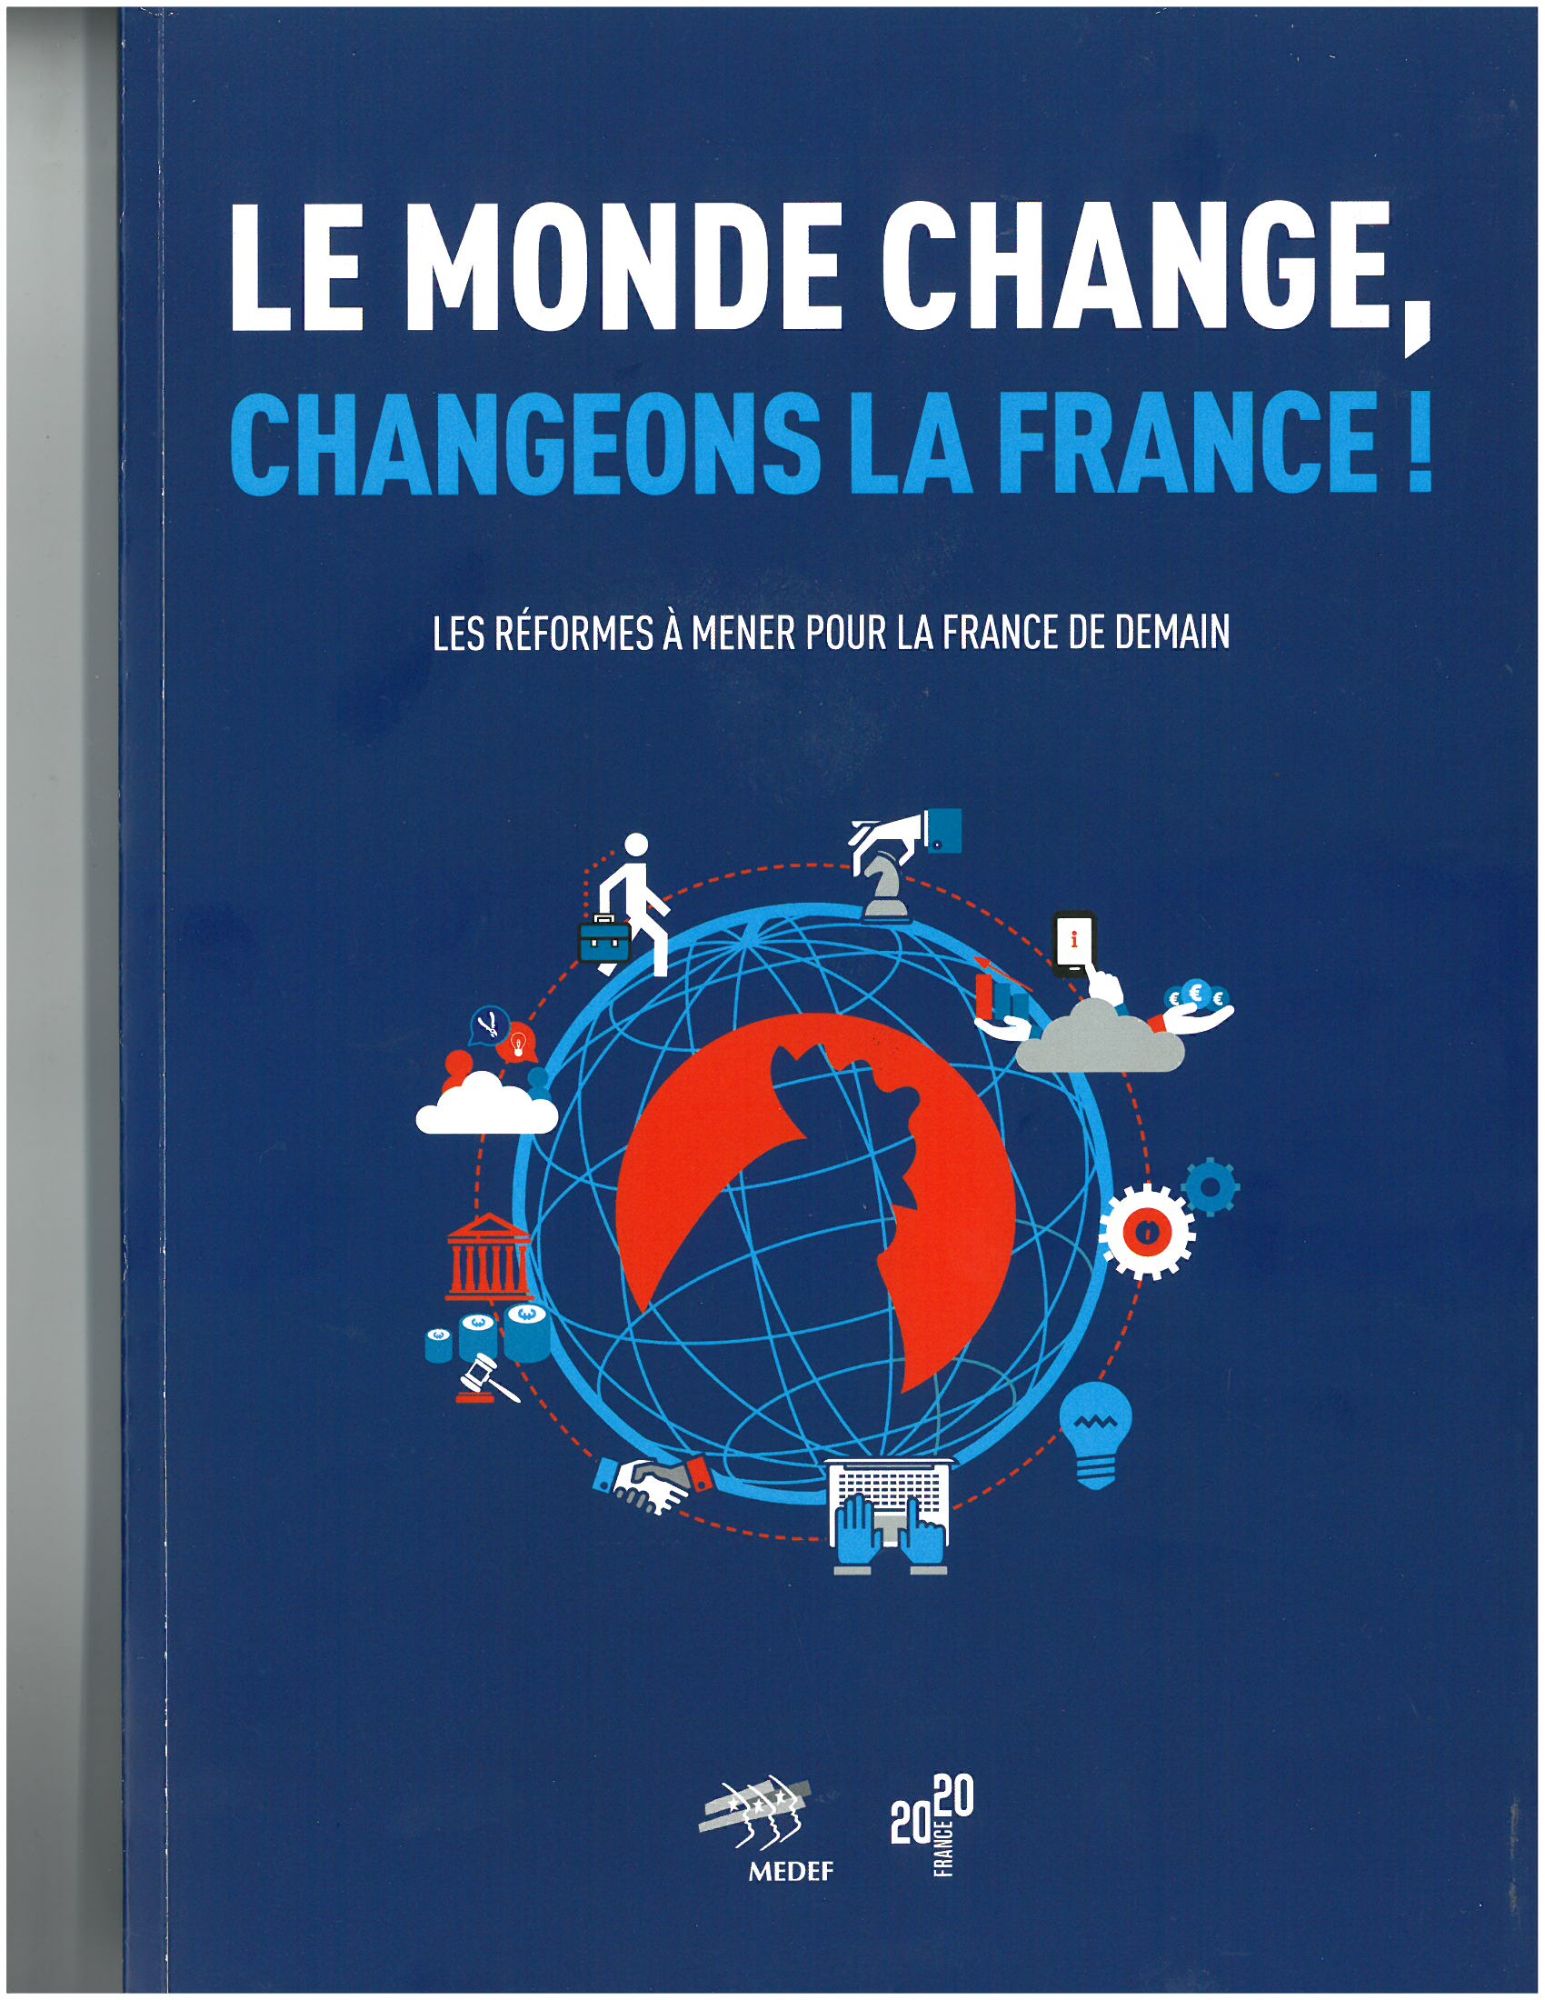 Le monde change, changeons la France!